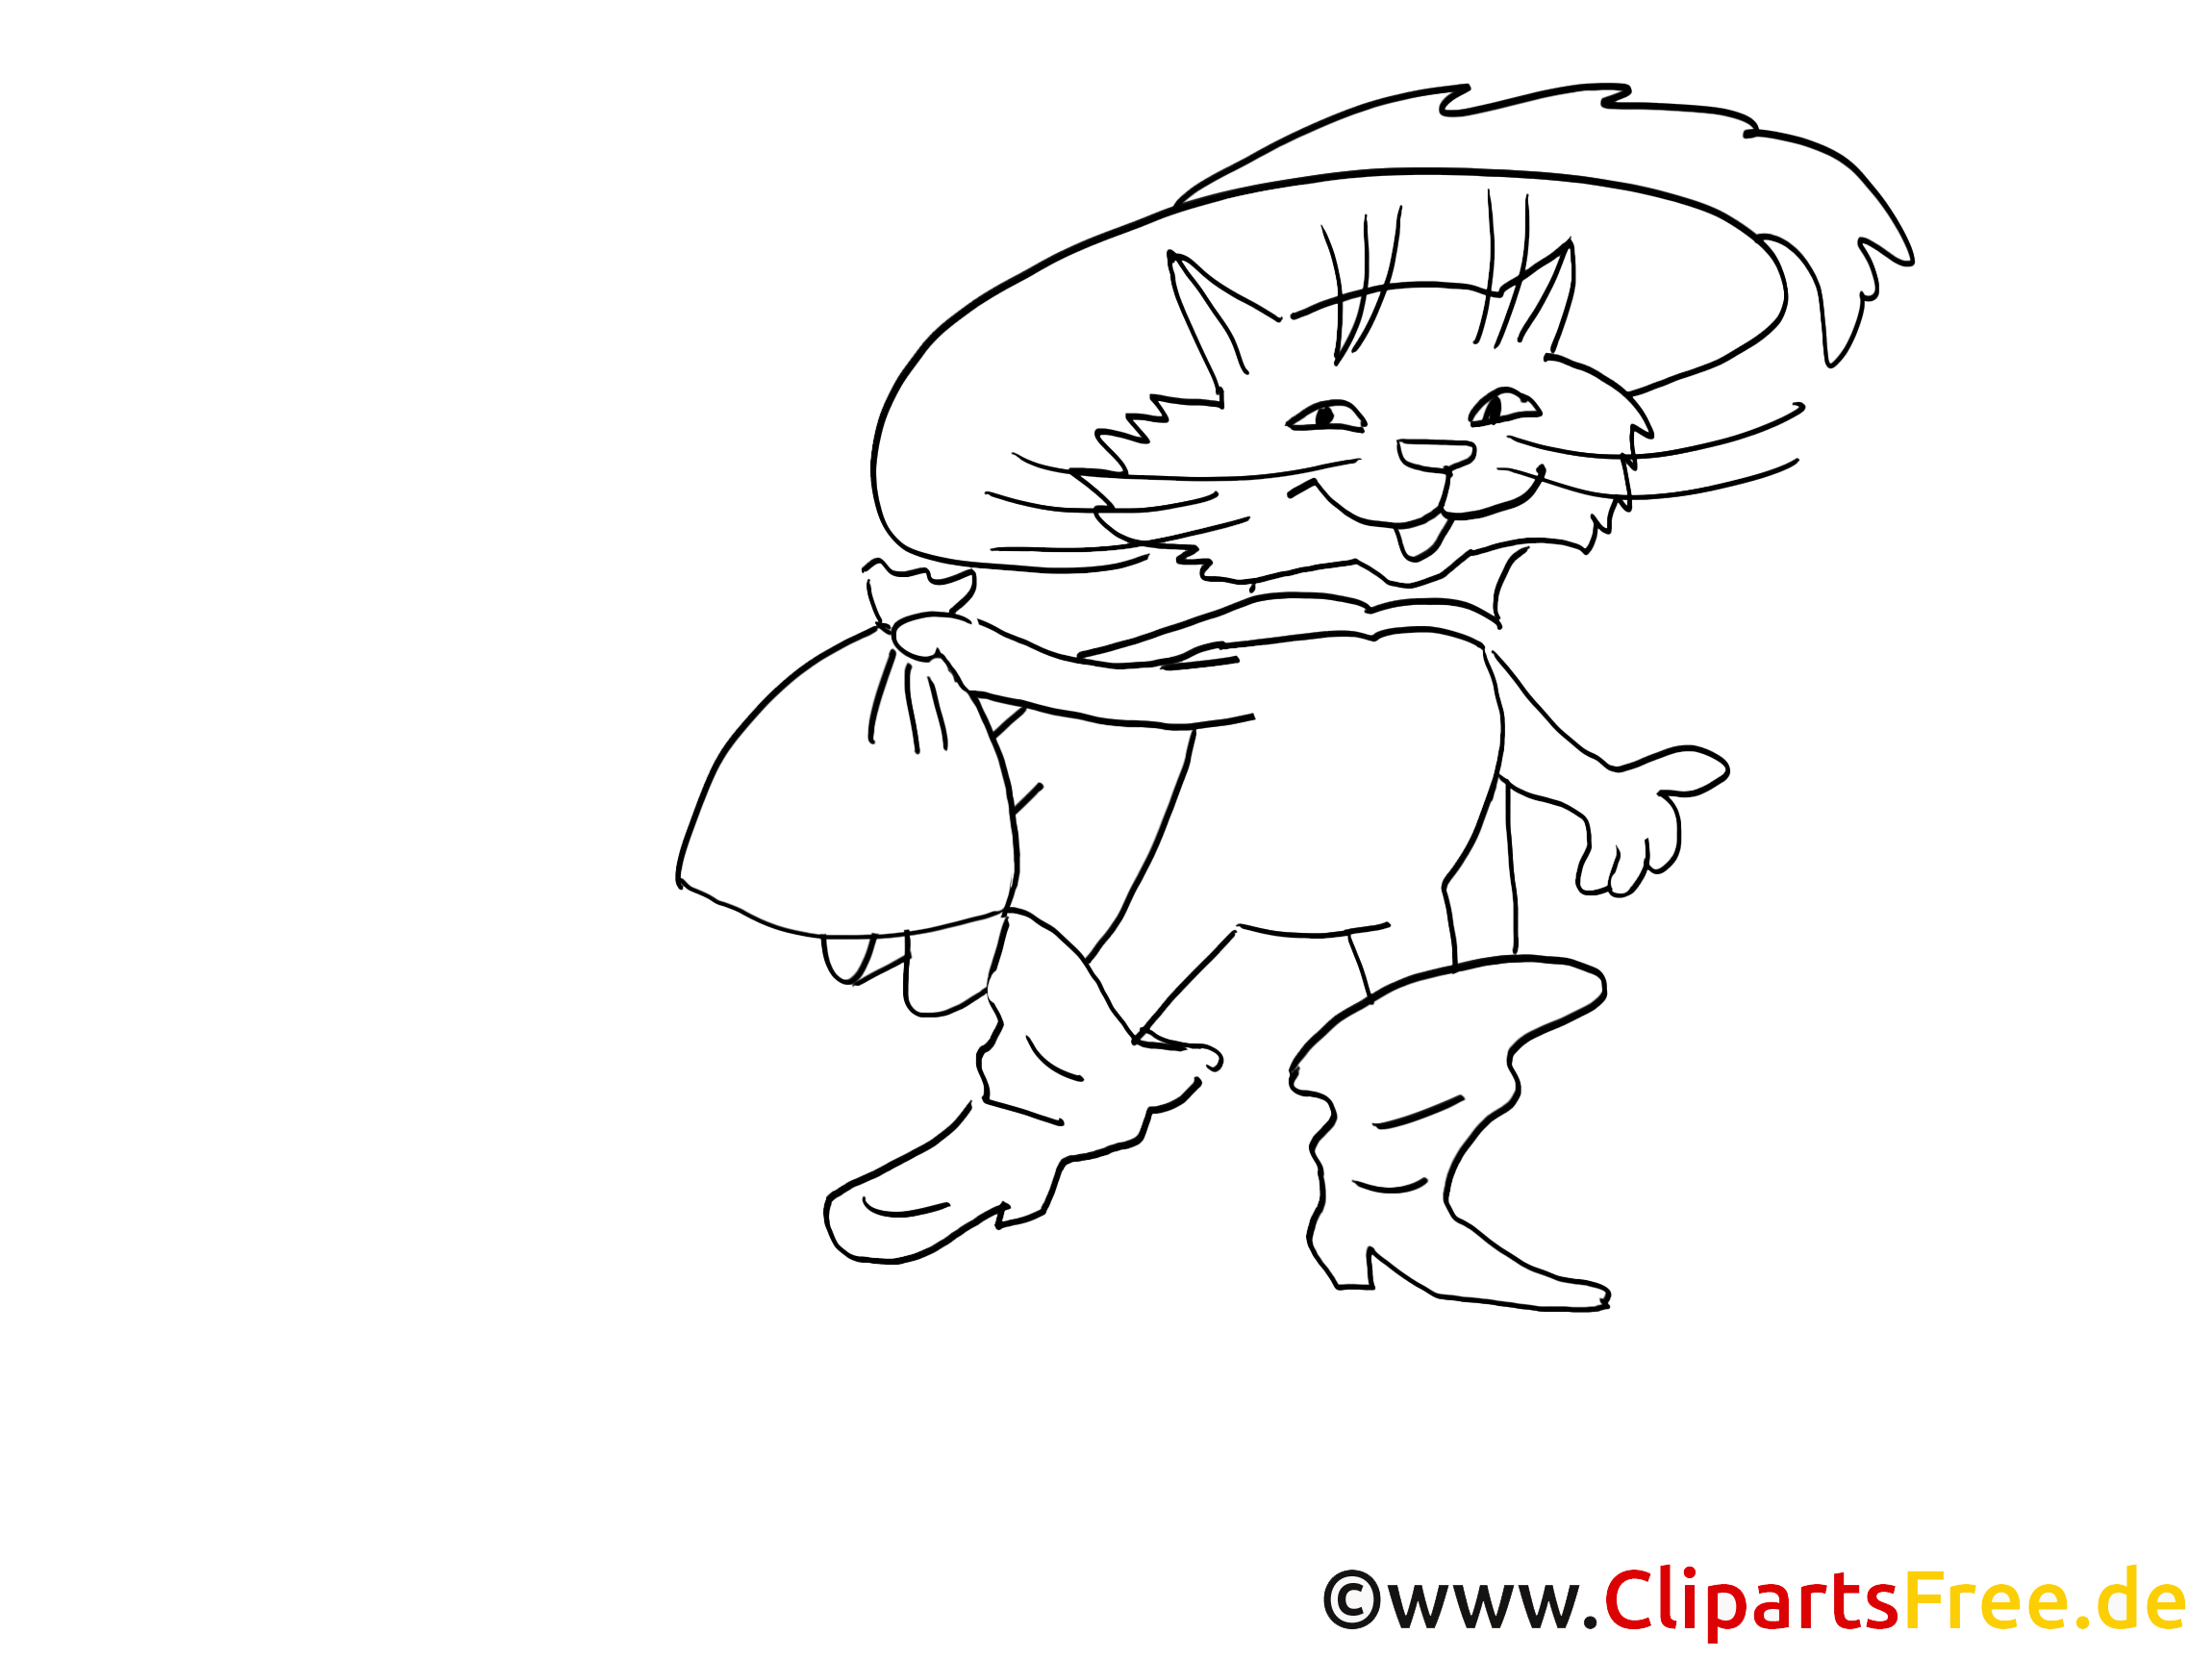 Иллюстрация кот в сапогах 2 класс. Раскраска кота в сапогах из сказки Шарля Перро. Кот в сапогах рисунок для детей.